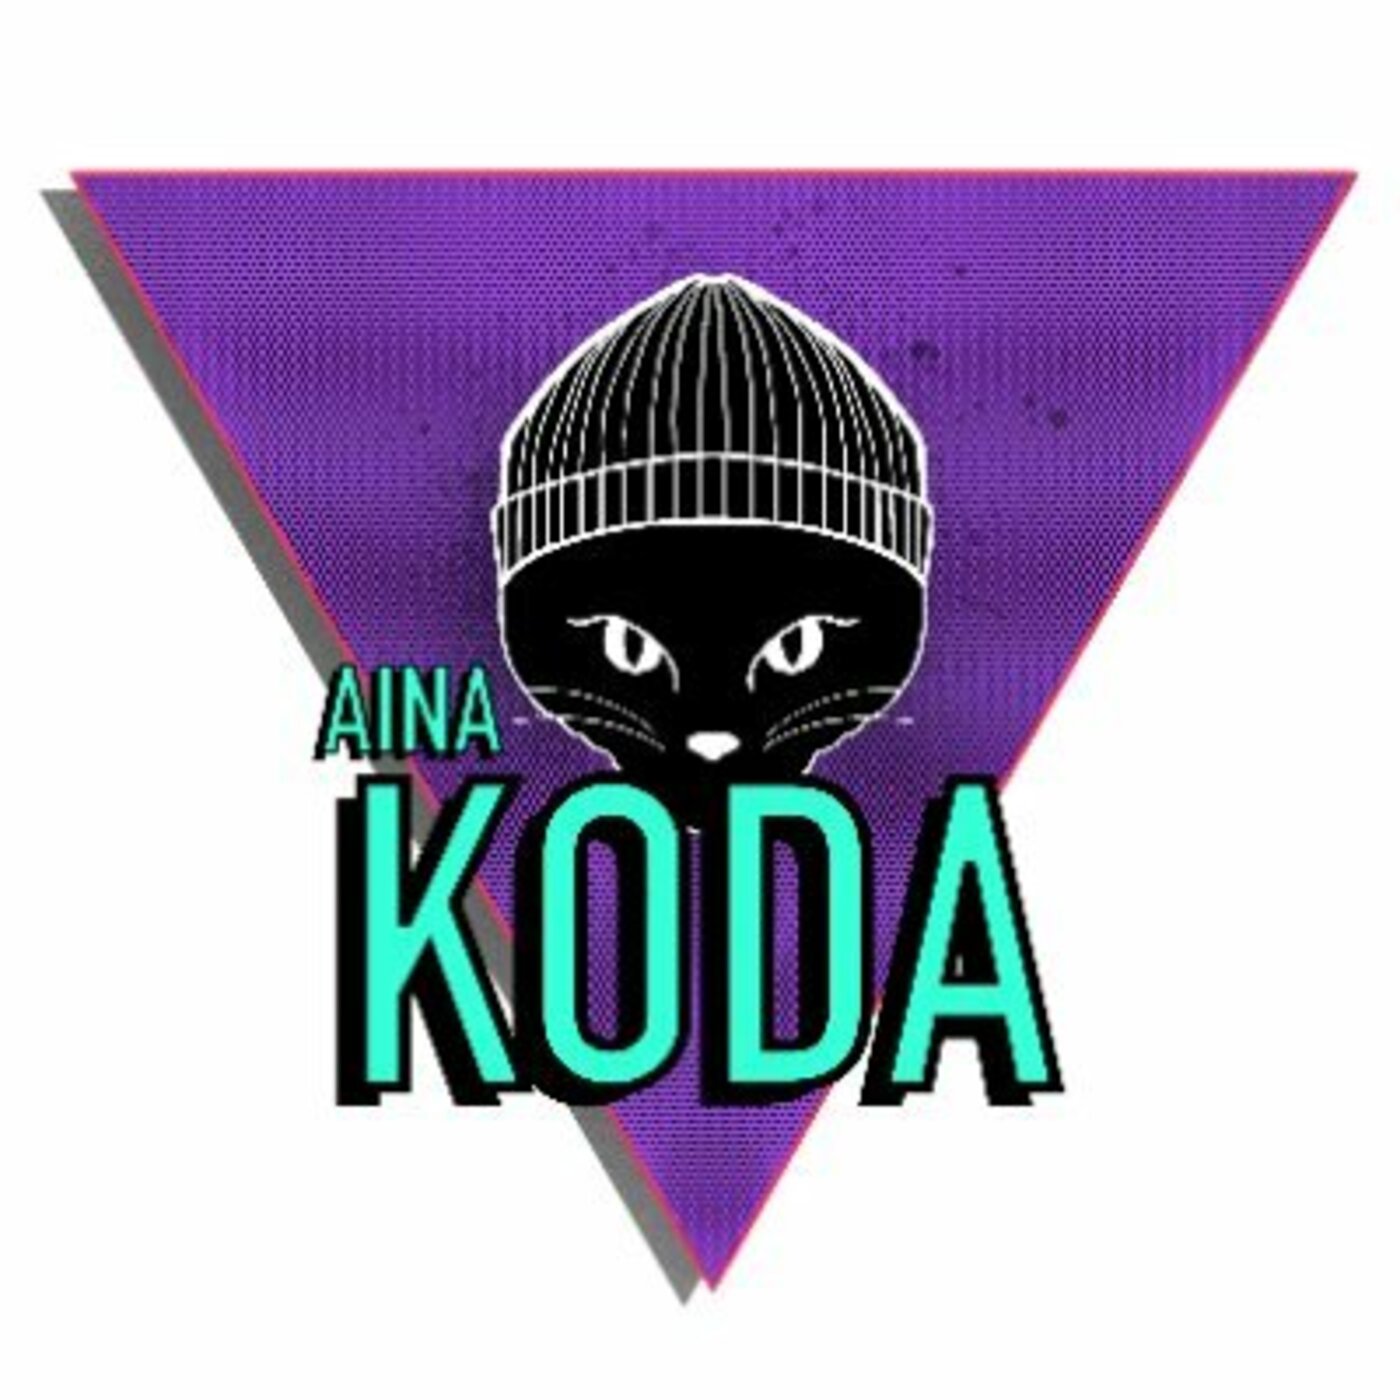 Aina Koda | musica en valencià